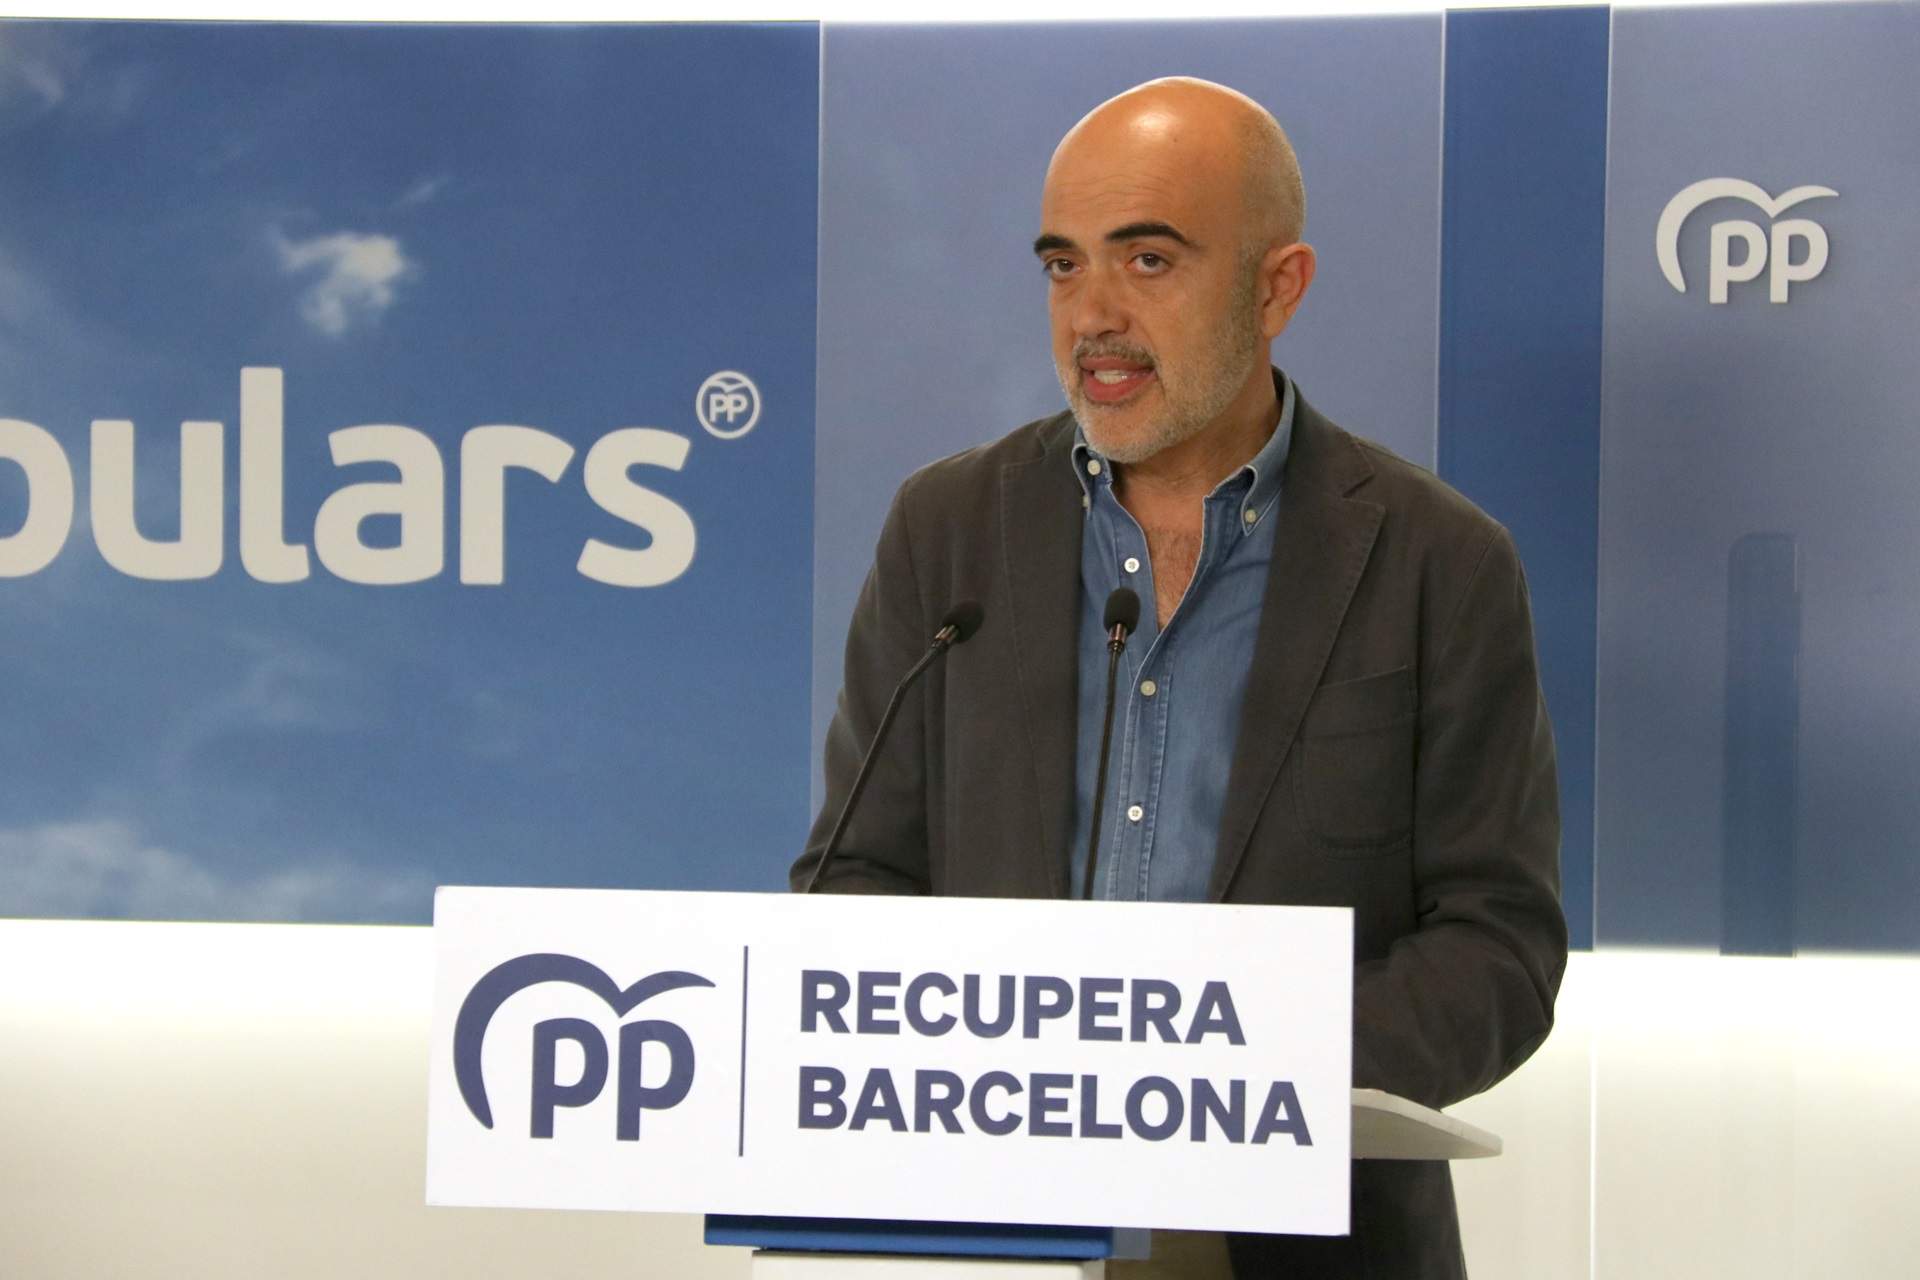 El PP catalán y el indulto a Puigdemont: "Las condiciones son el arrepentimiento y pedir perdón"